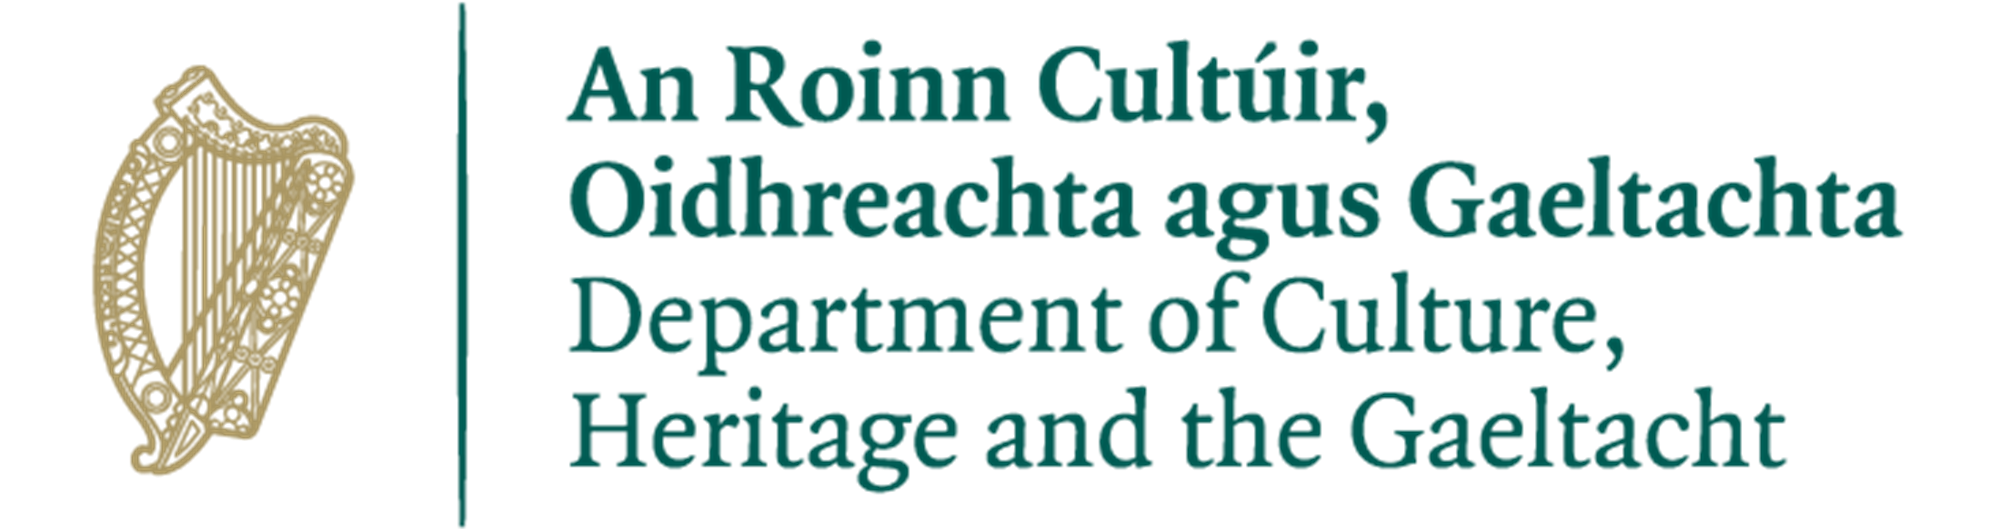 An Roinn Cultúir, Oidhreachta agus Gaeltachta